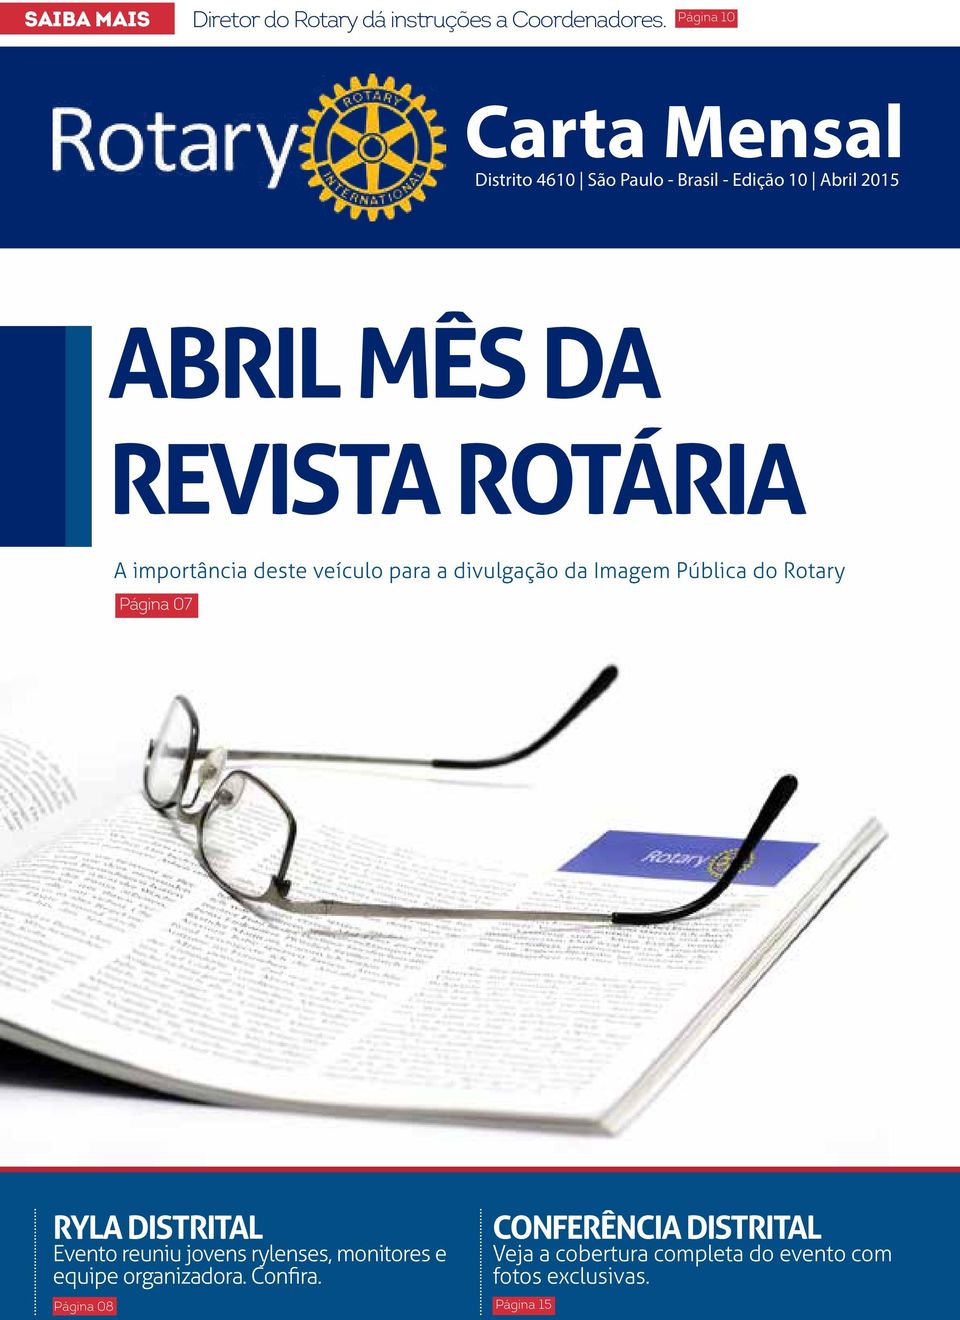 importância deste veículo para a divulgação da Imagem Pública do Rotary Página 07 RYLA DISTRITAL Evento